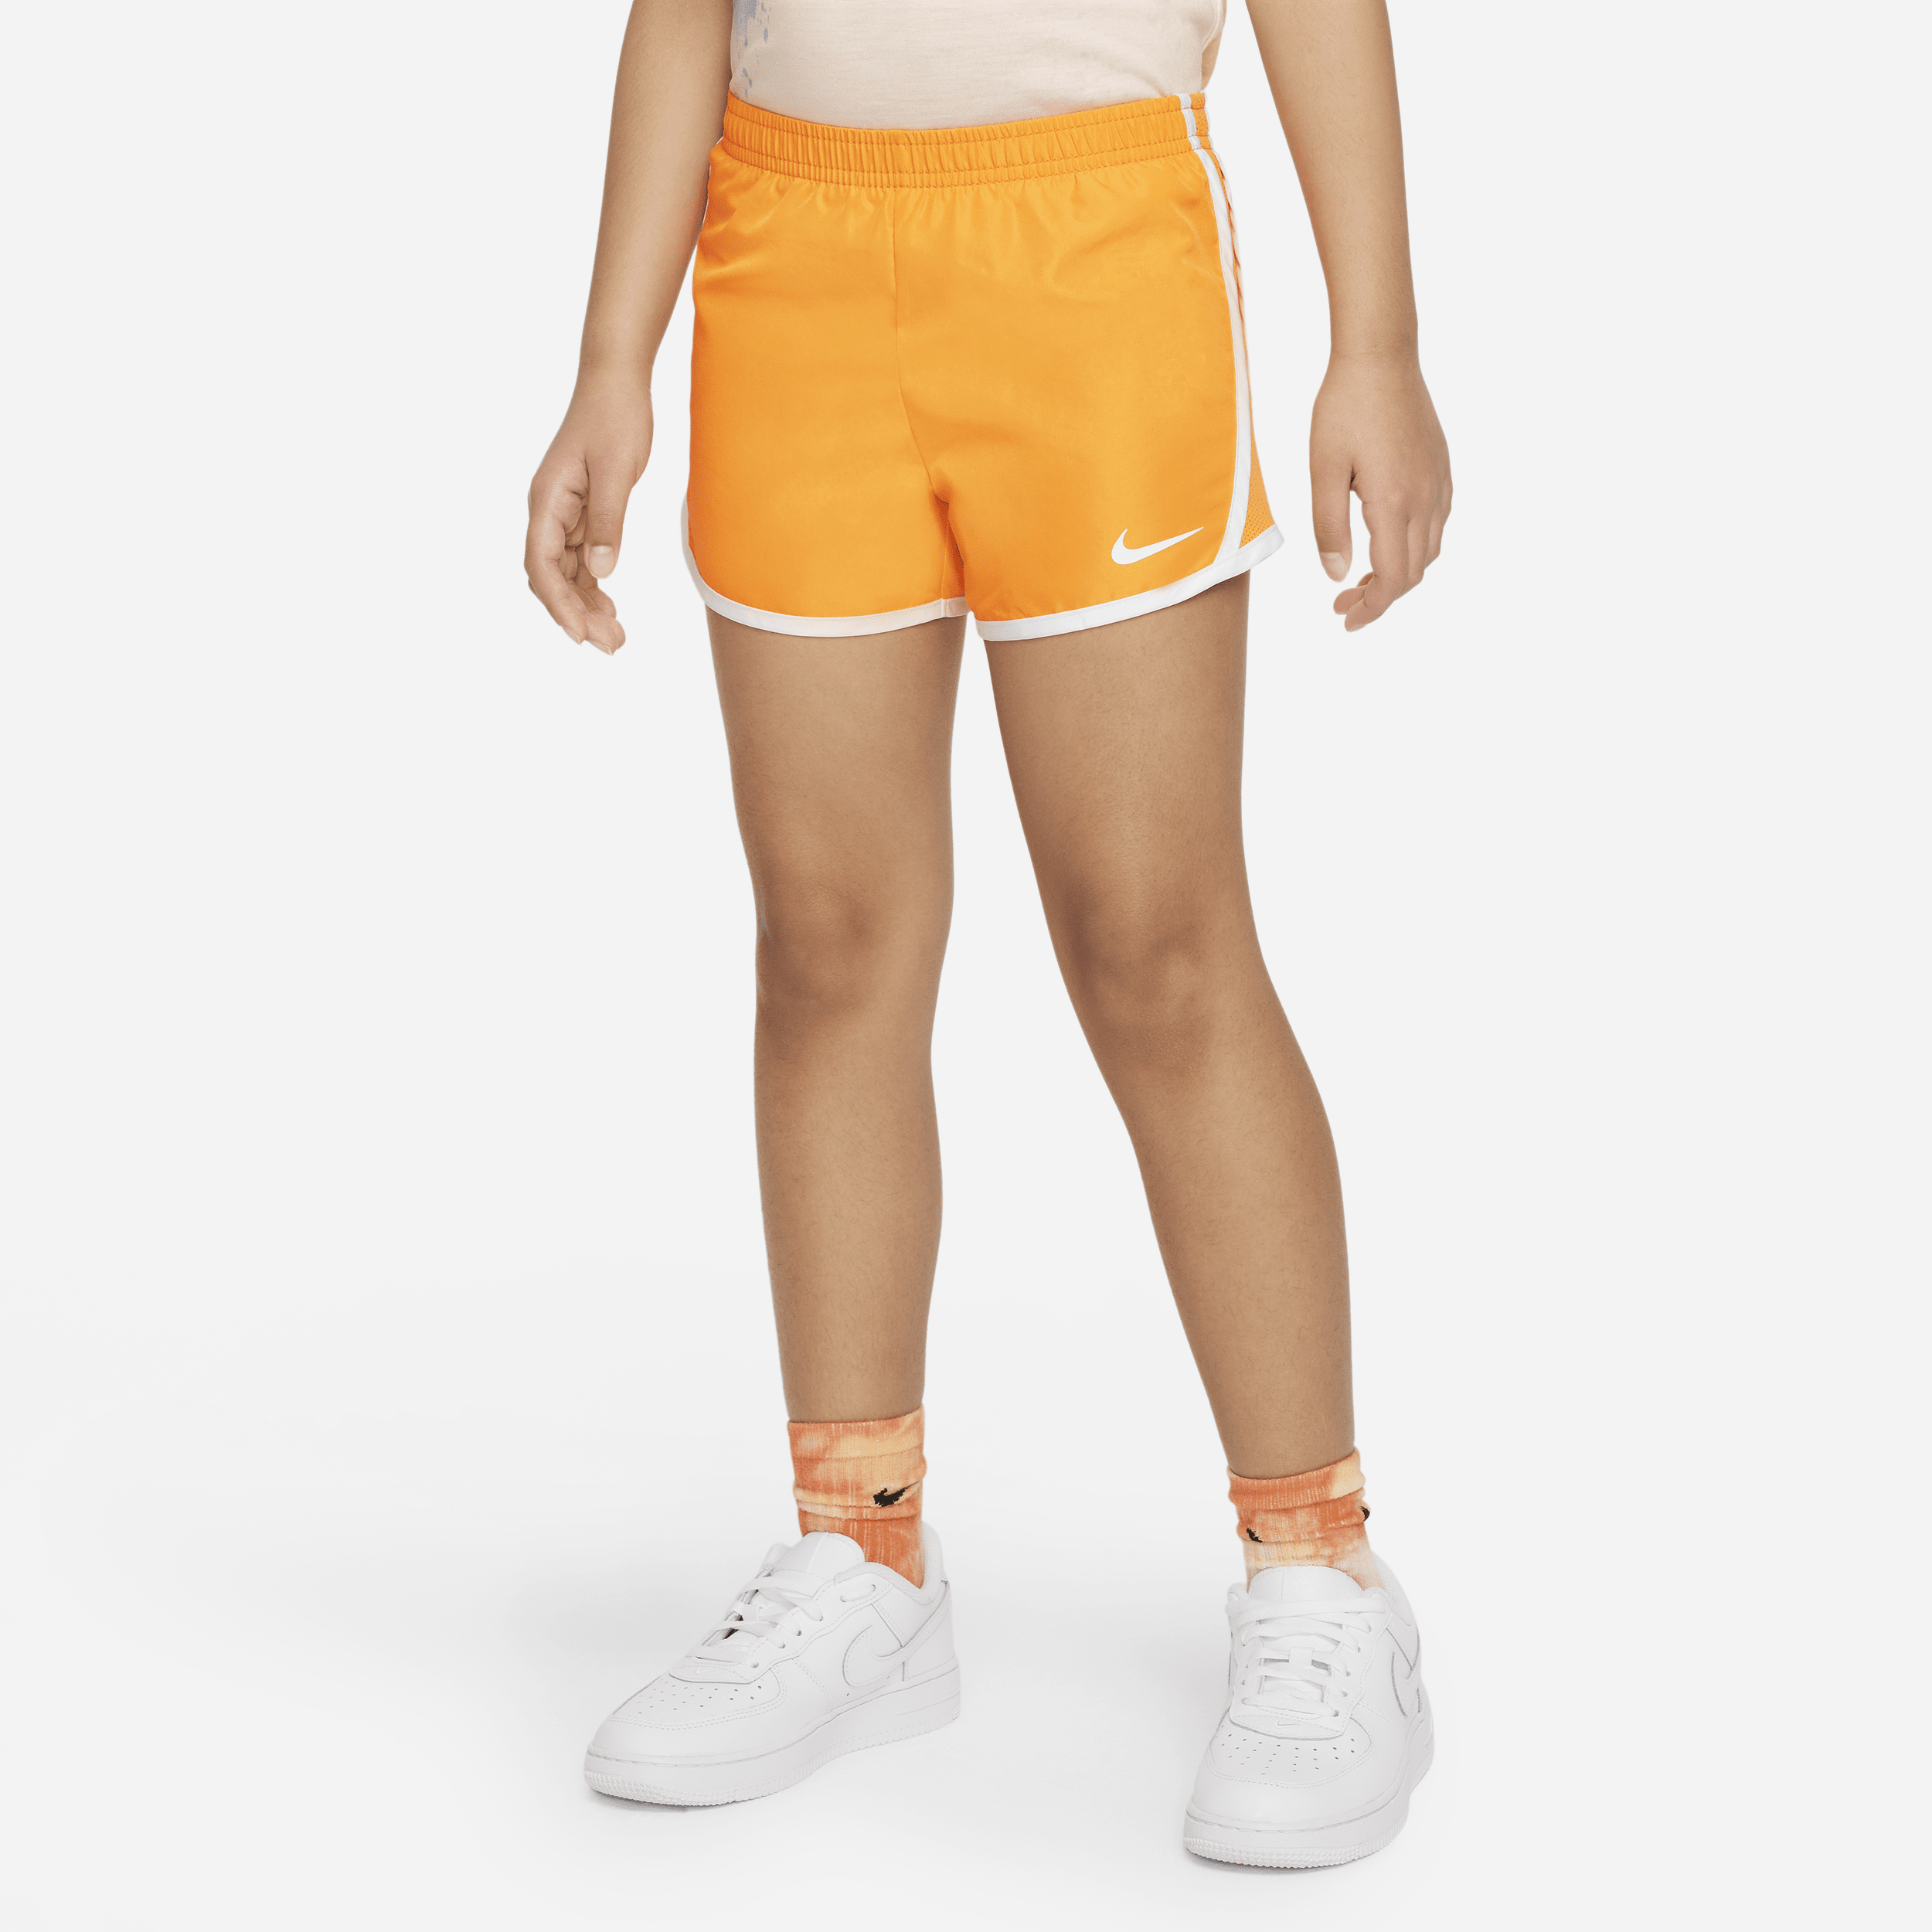 Shorts Nike Dri-FIT Tempo - Bambino/a - Arancione